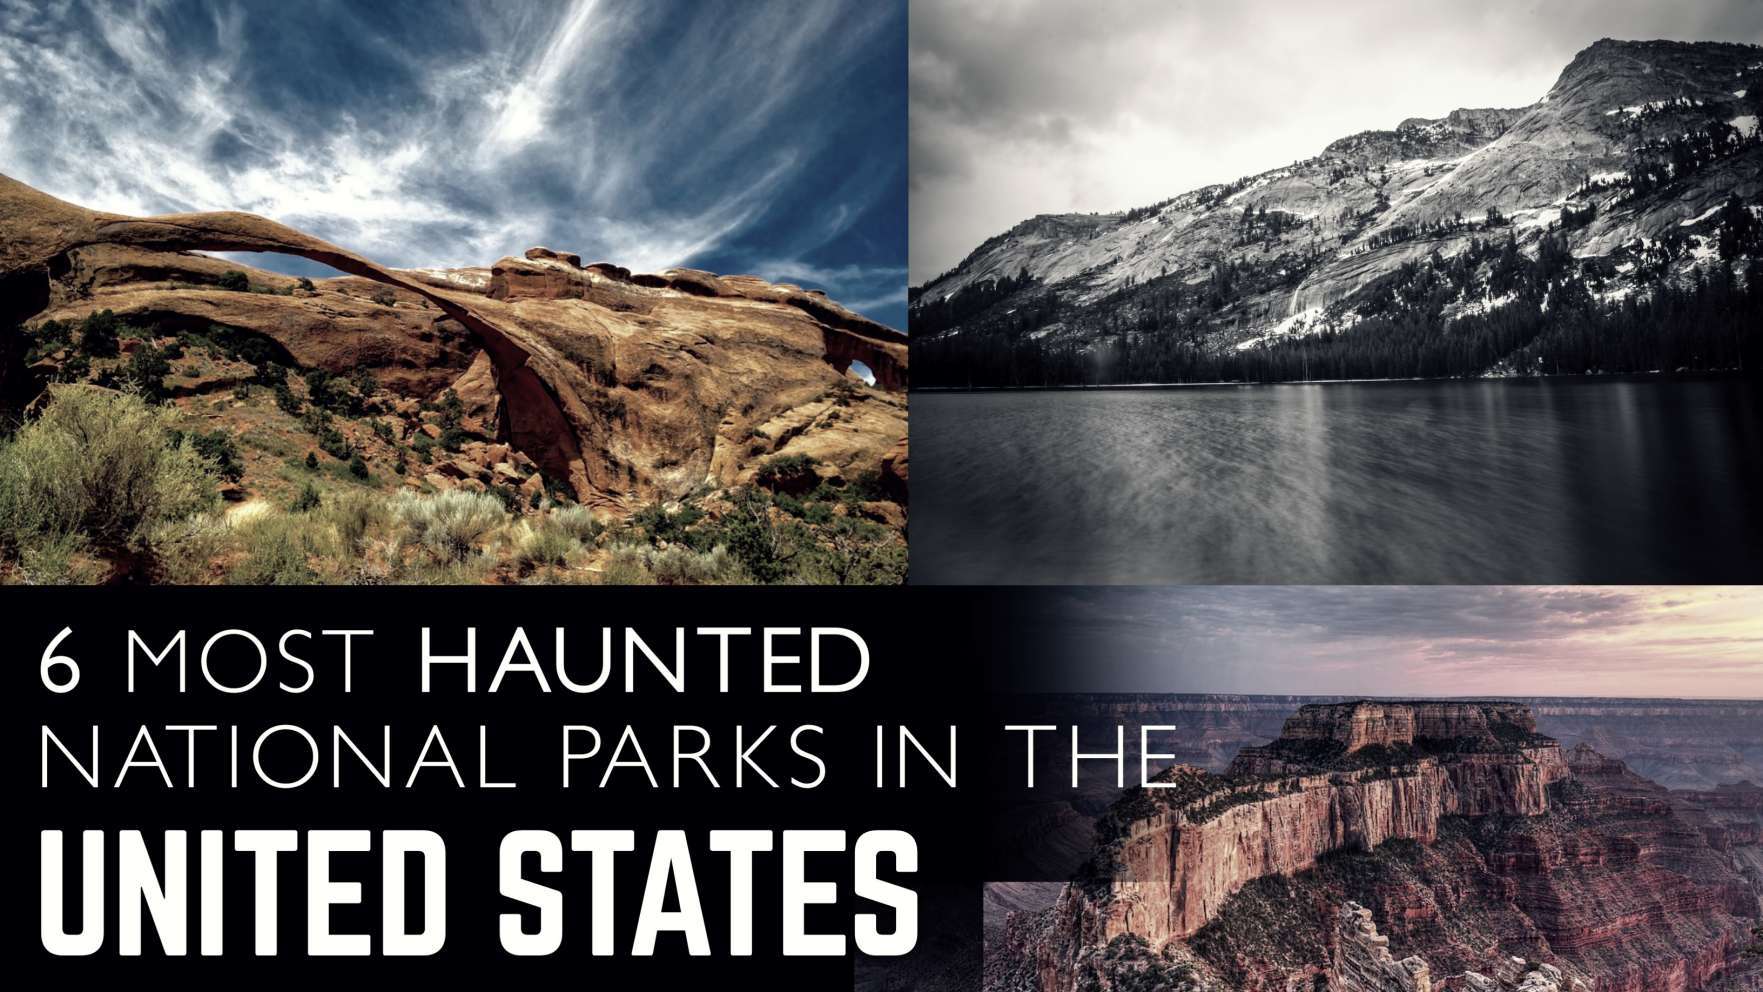 美國最鬧鬼的 6 個國家公園